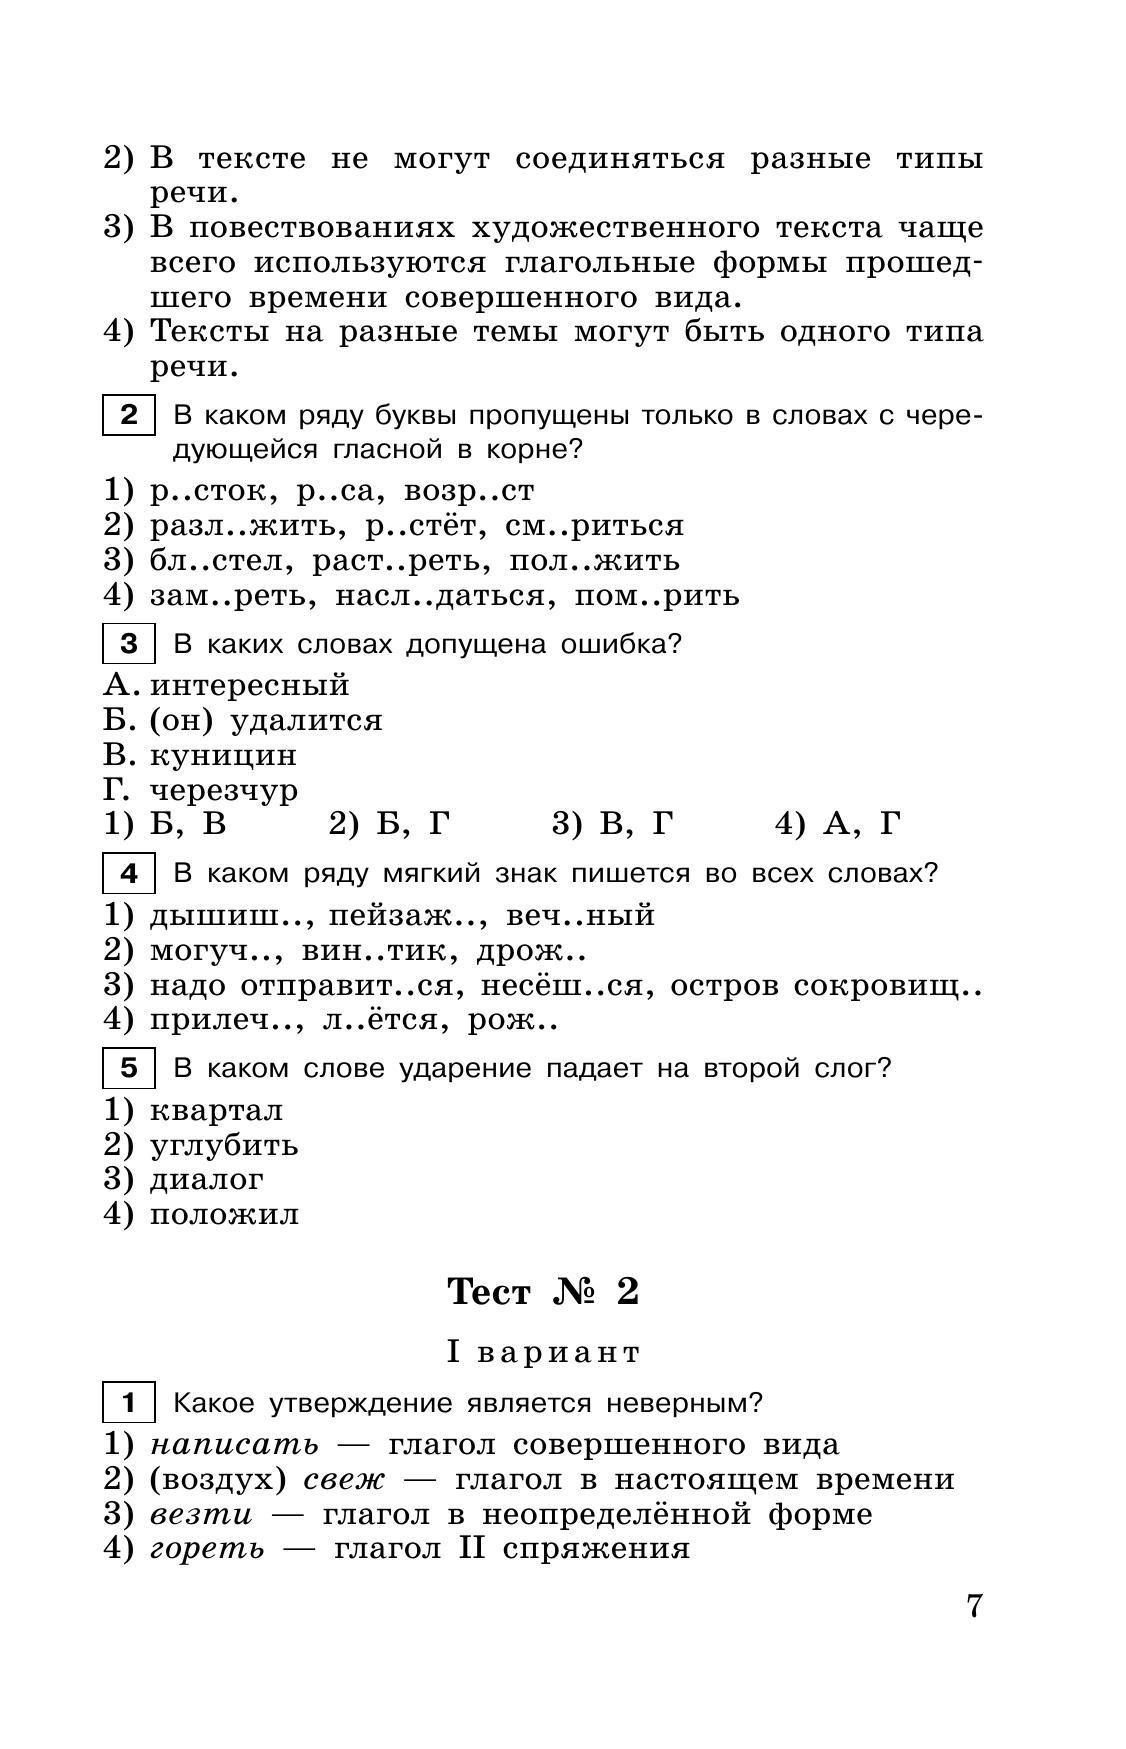 Тестовые задания по русскому языку. 6 класс 5